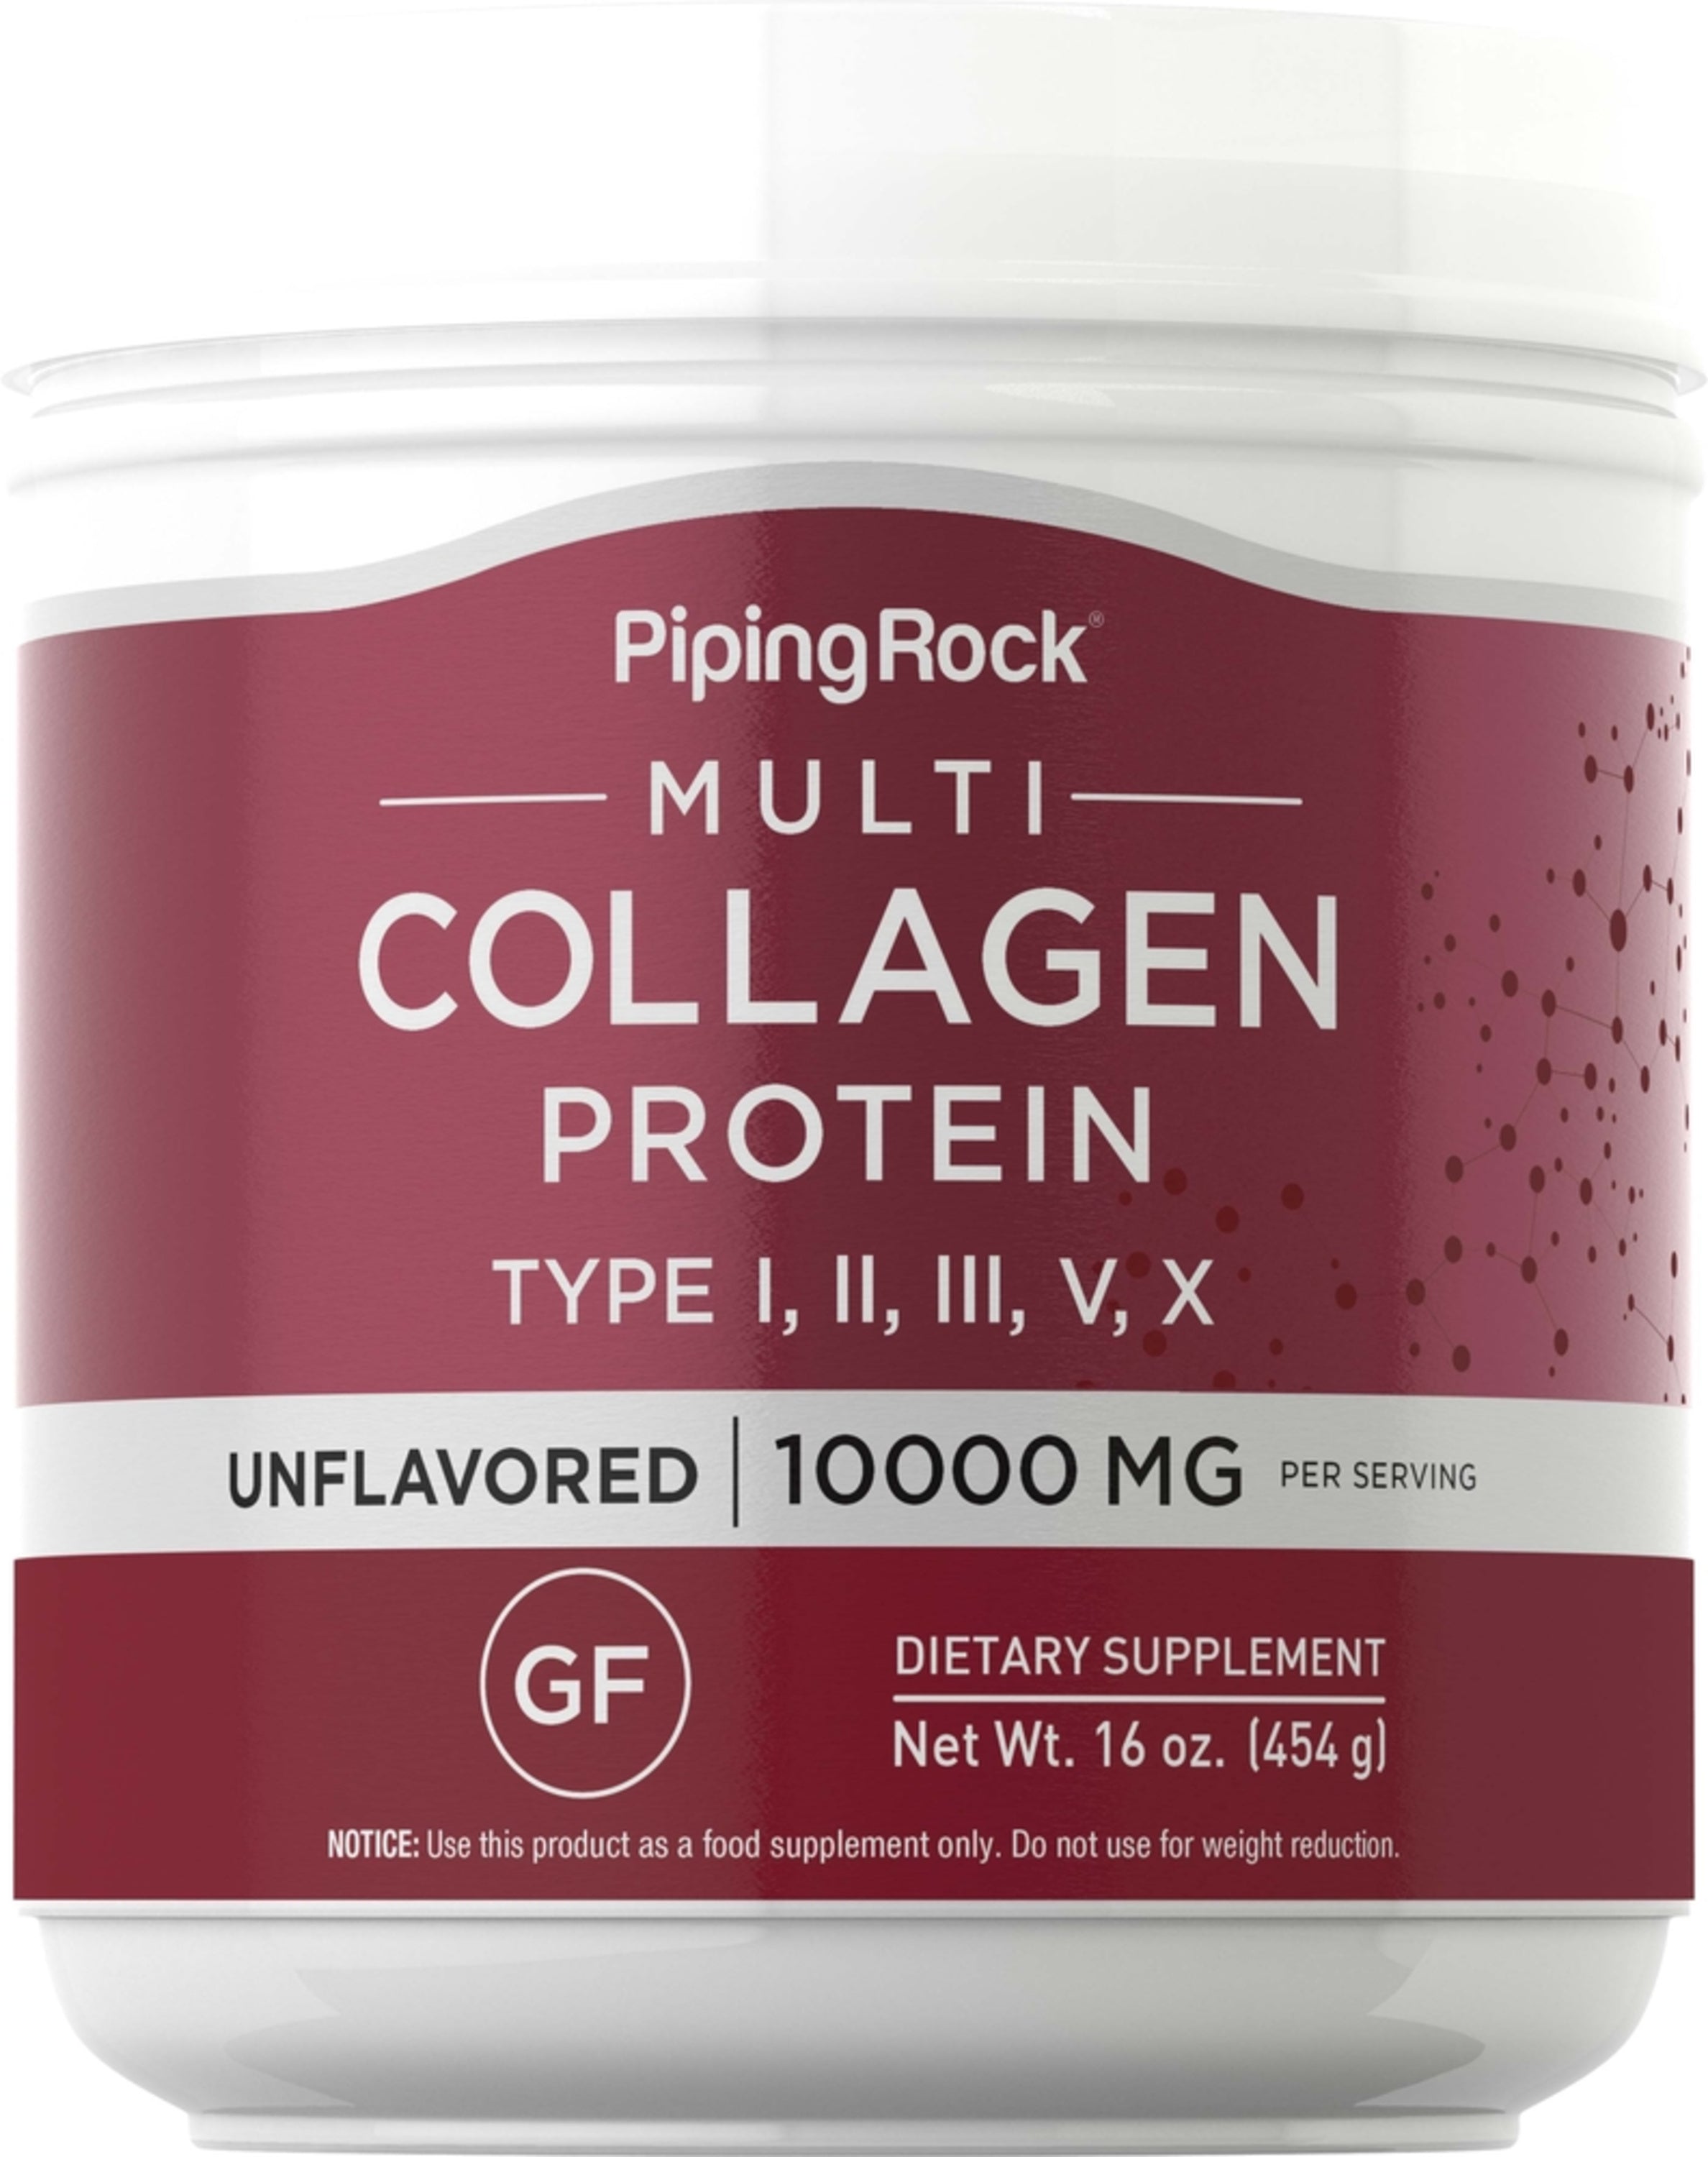 Multi Collagen Protein Powder, 10,000 mg (per serving), 16 oz (454 g) Bottle